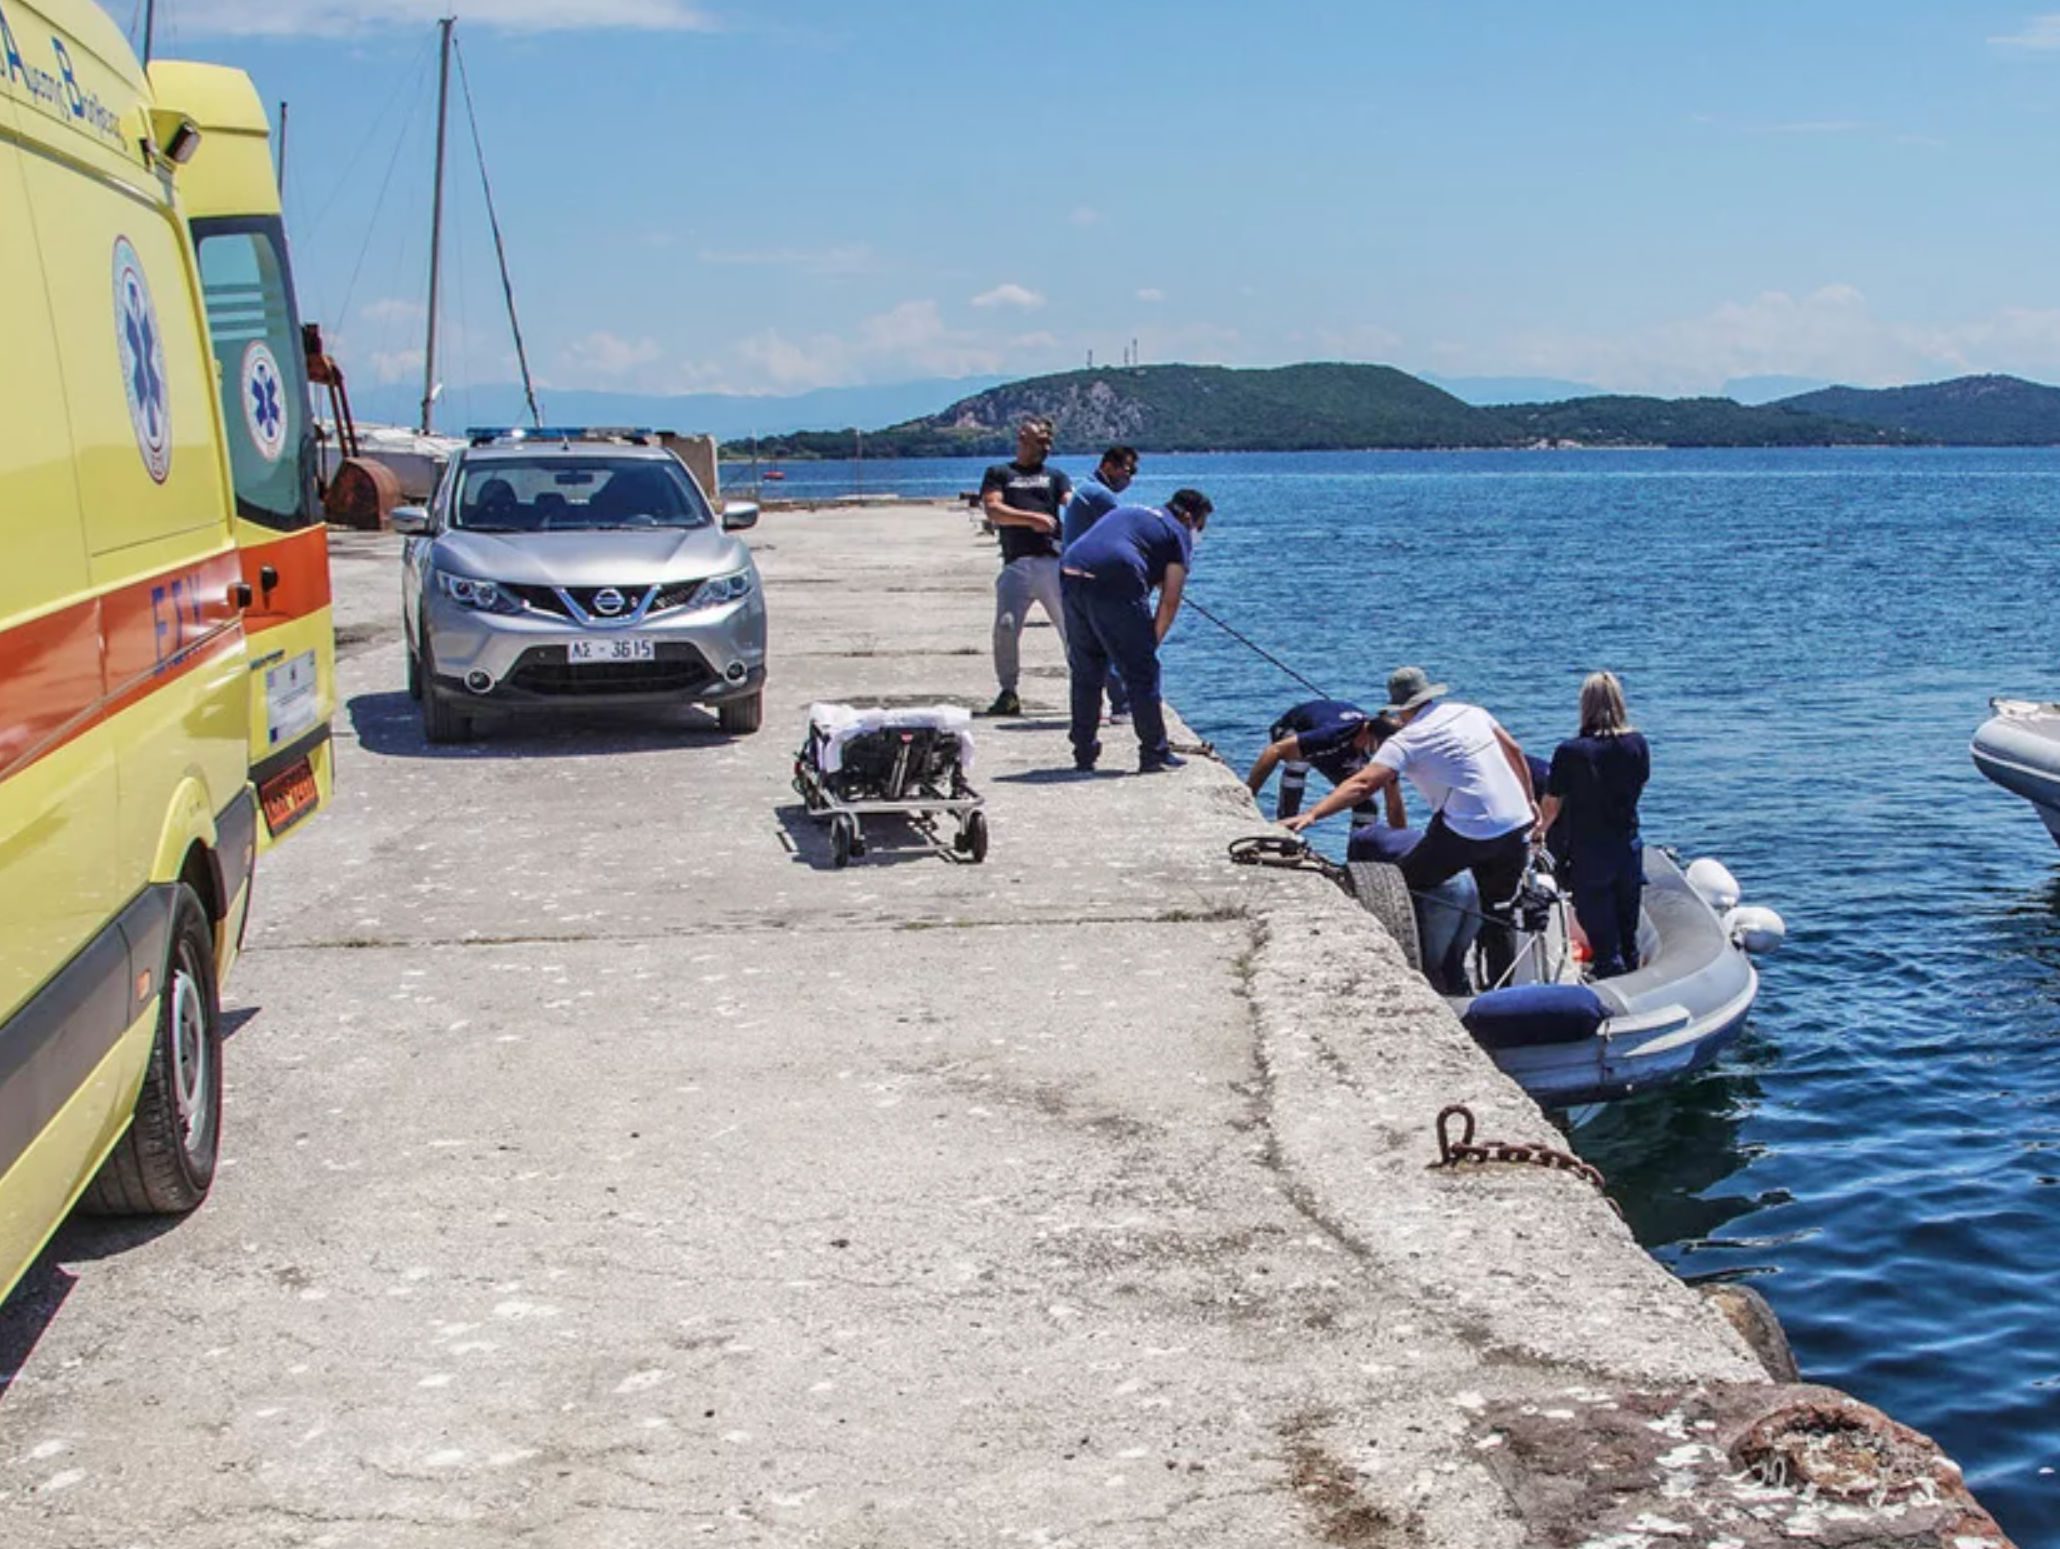 Αυτοκίνητο έπεσε σε λιμάνι: Ανασύρθηκε ο οδηγός χωρίς τις αισθήσεις του